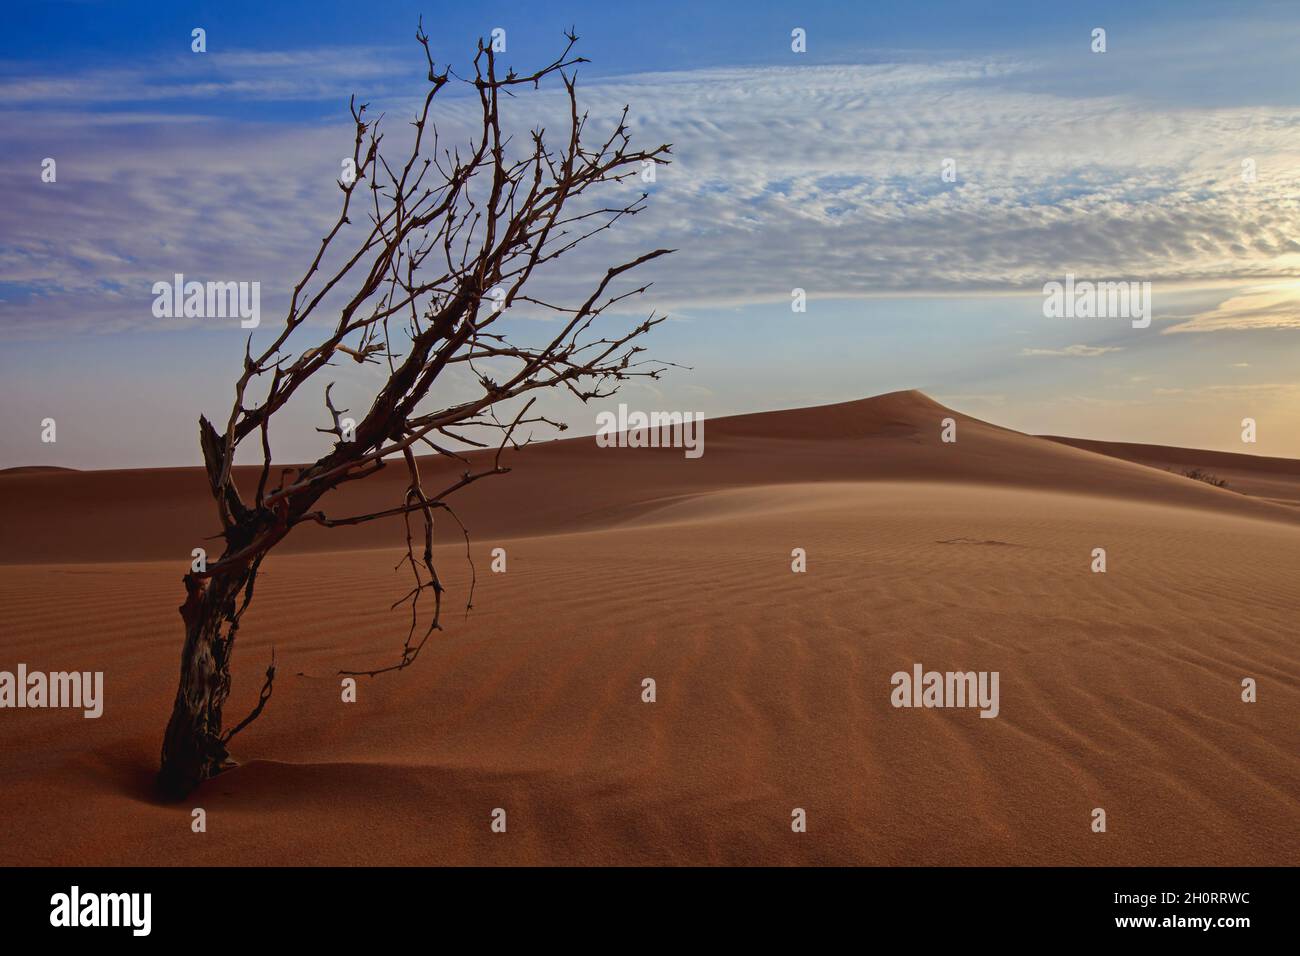 Dead tree in the desert, Saudi Arabia Stock Photo